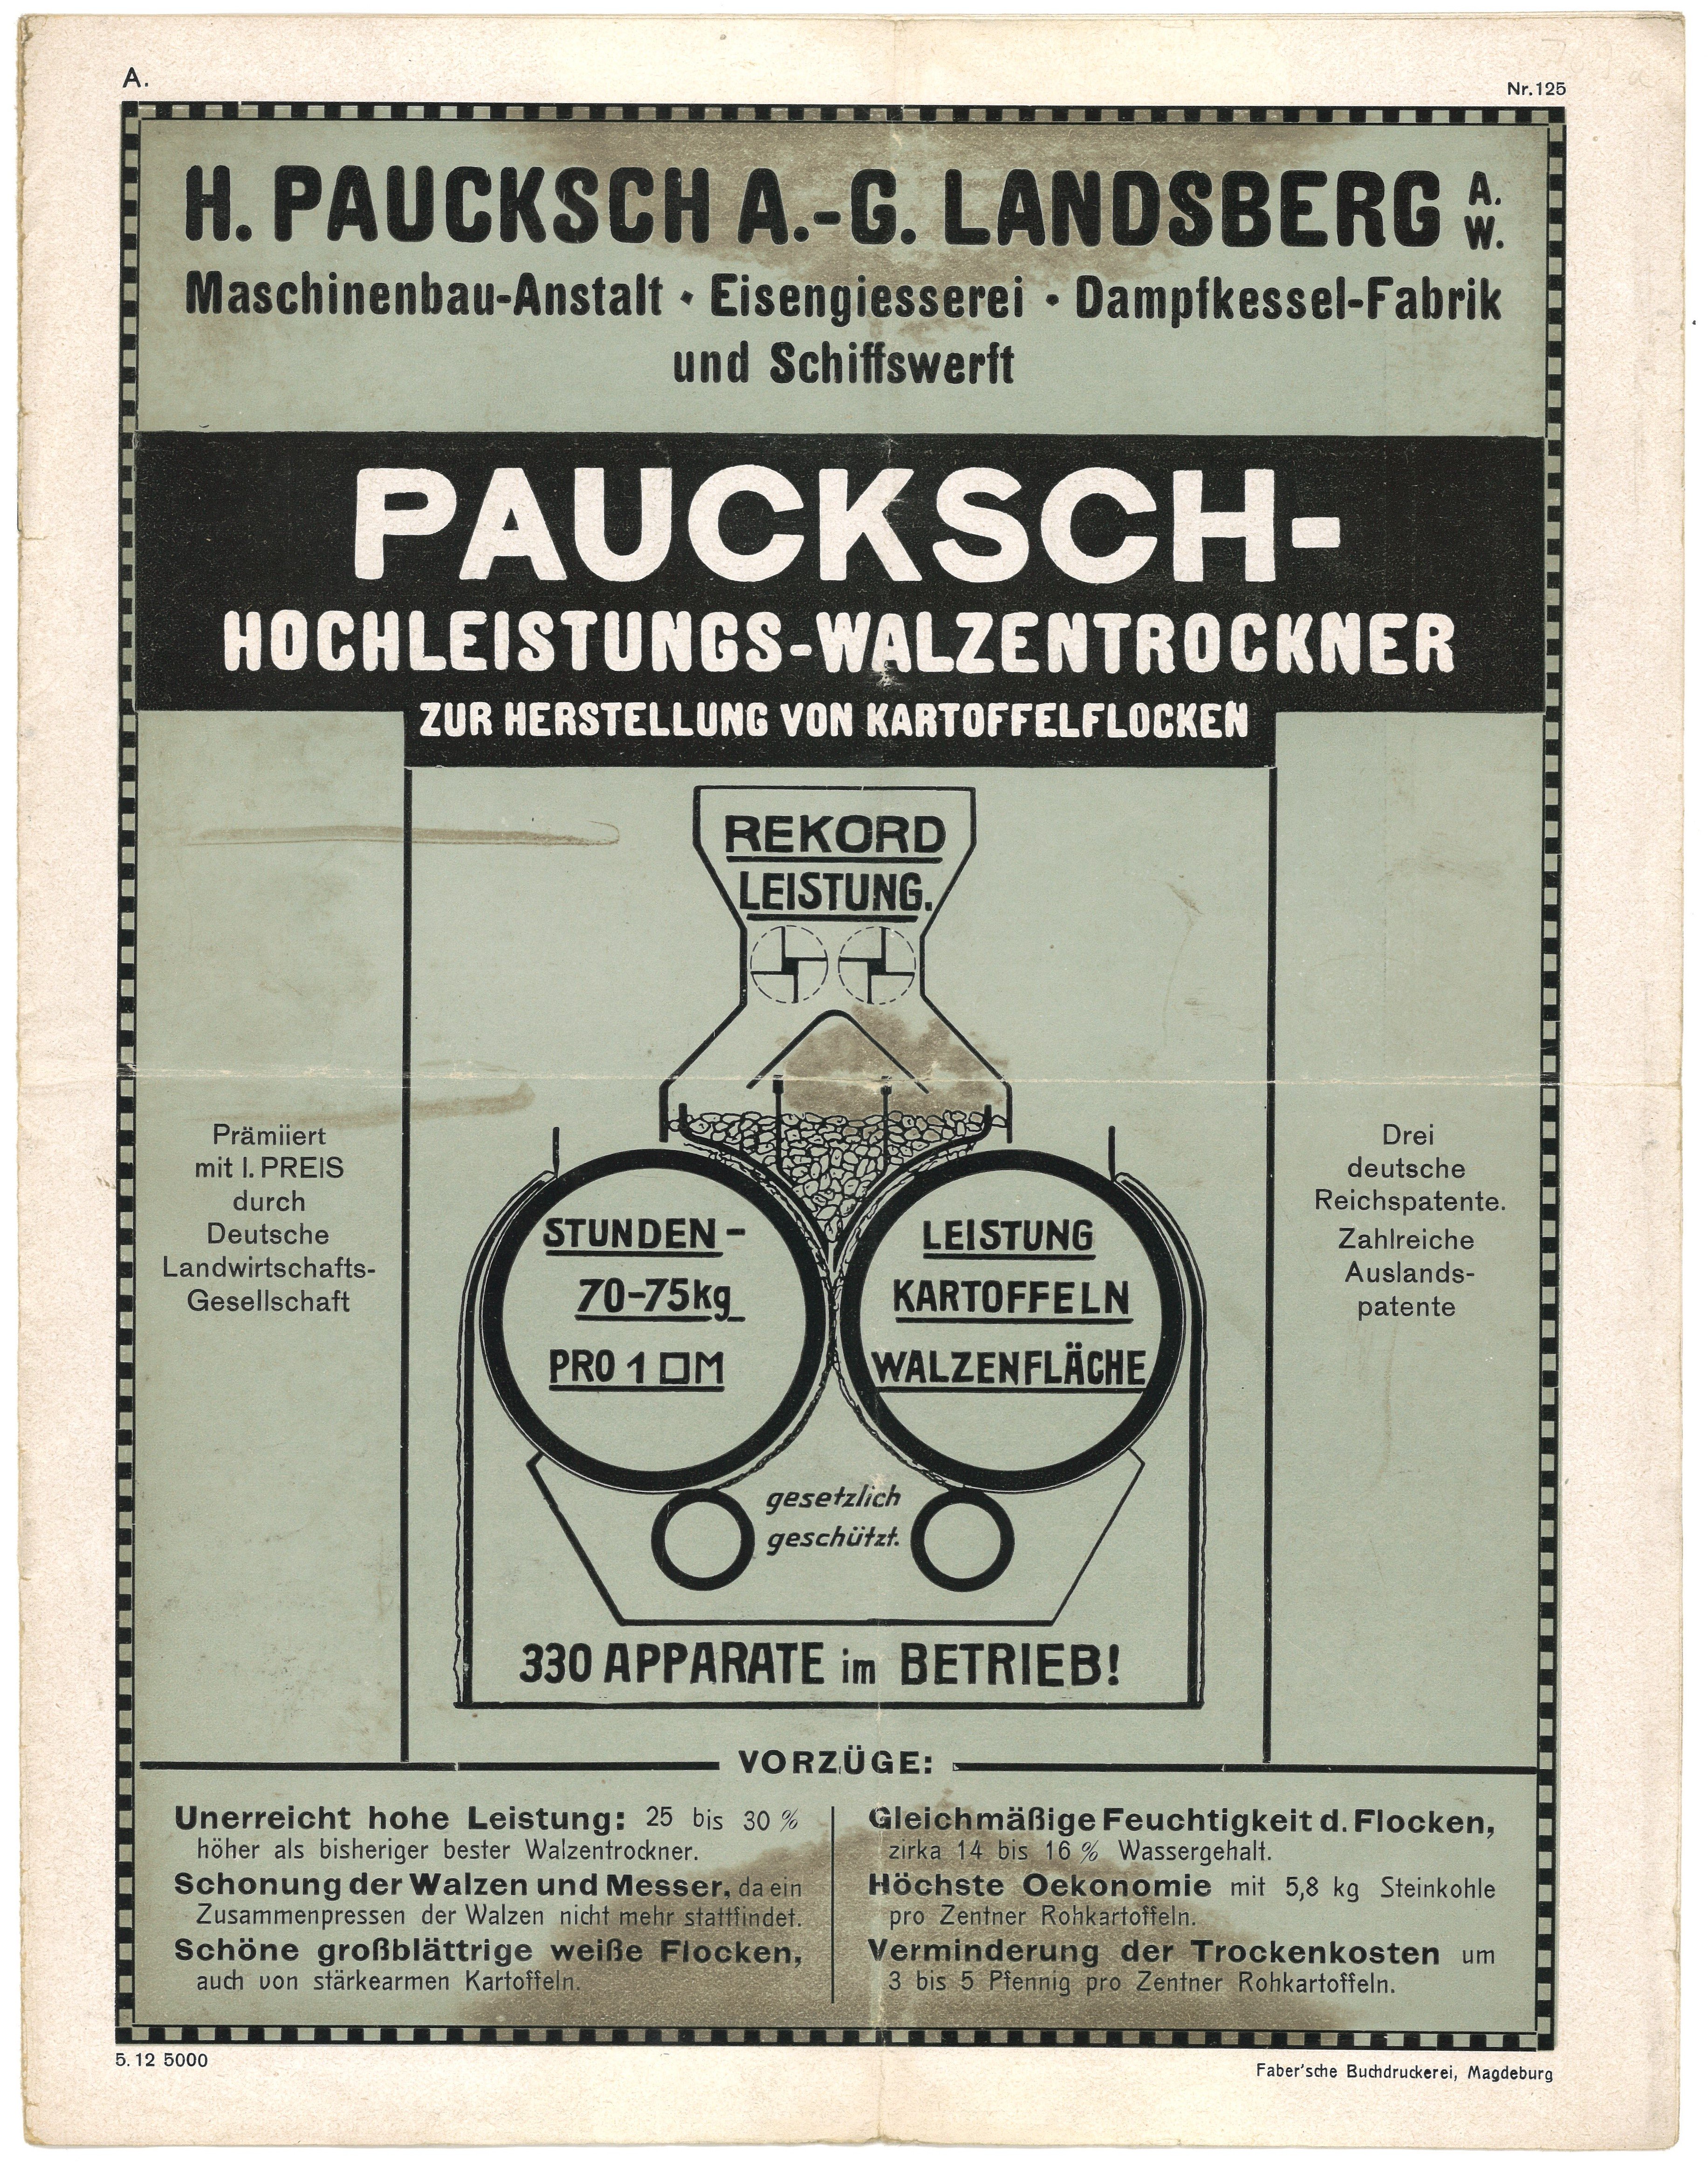 Werbeprospekt der Maschinenfabrik H. Paucksch AG in Landsberg a.W. [Gorzów Wlkp.] für Hochleistungs-Walzentrockner (1912) (Landesgeschichtliche Vereinigung für die Mark Brandenburg e.V., Archiv CC BY)